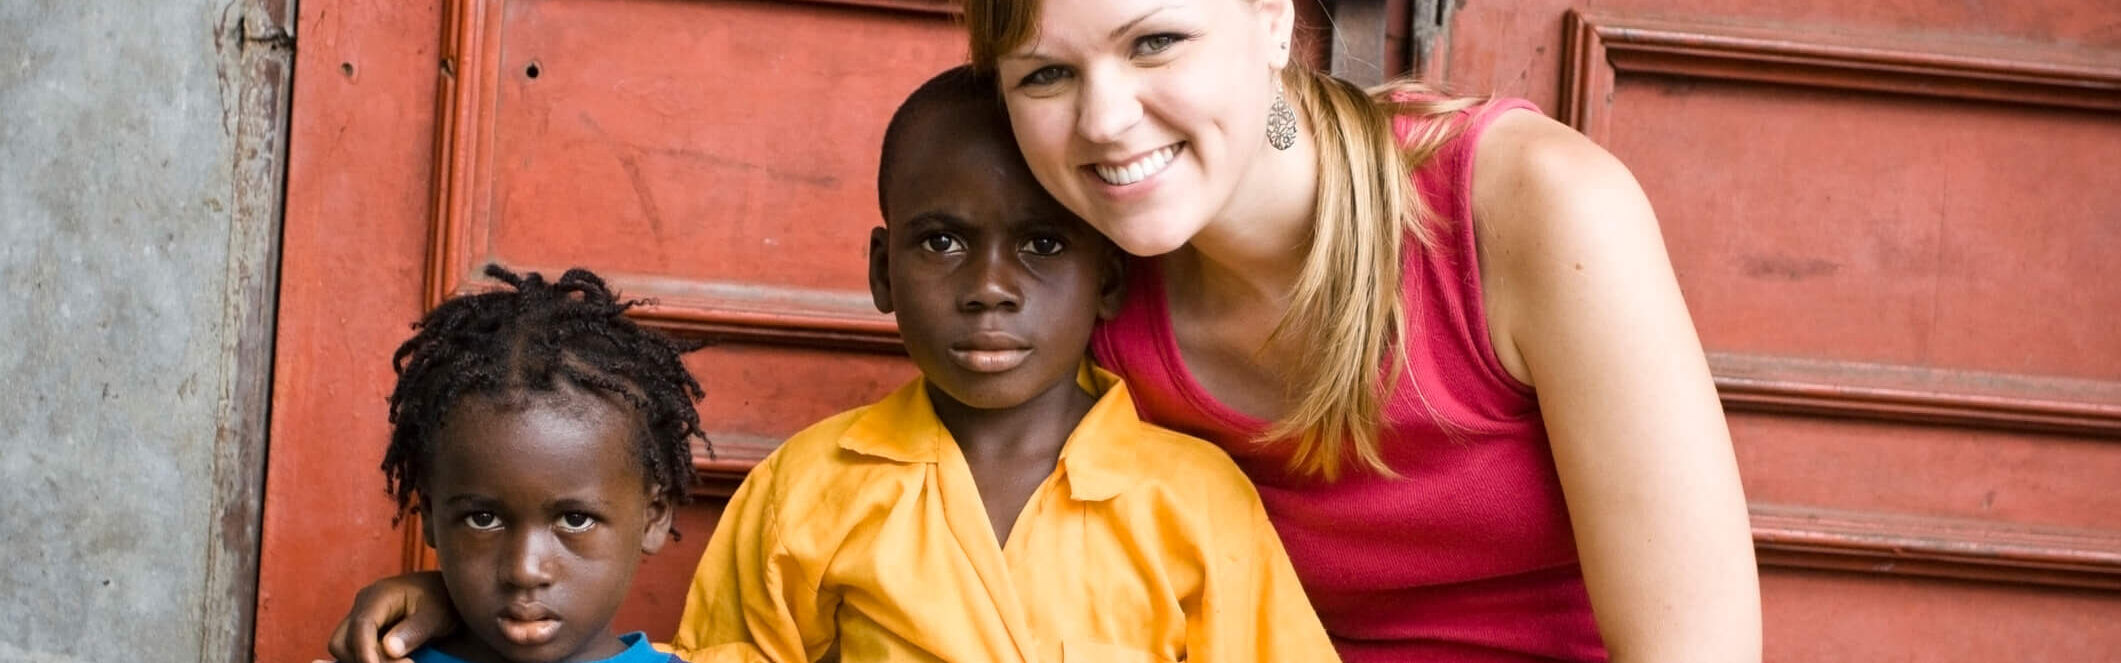 Junge europäische Frau posiert mit zwei afrikanischen Kindern